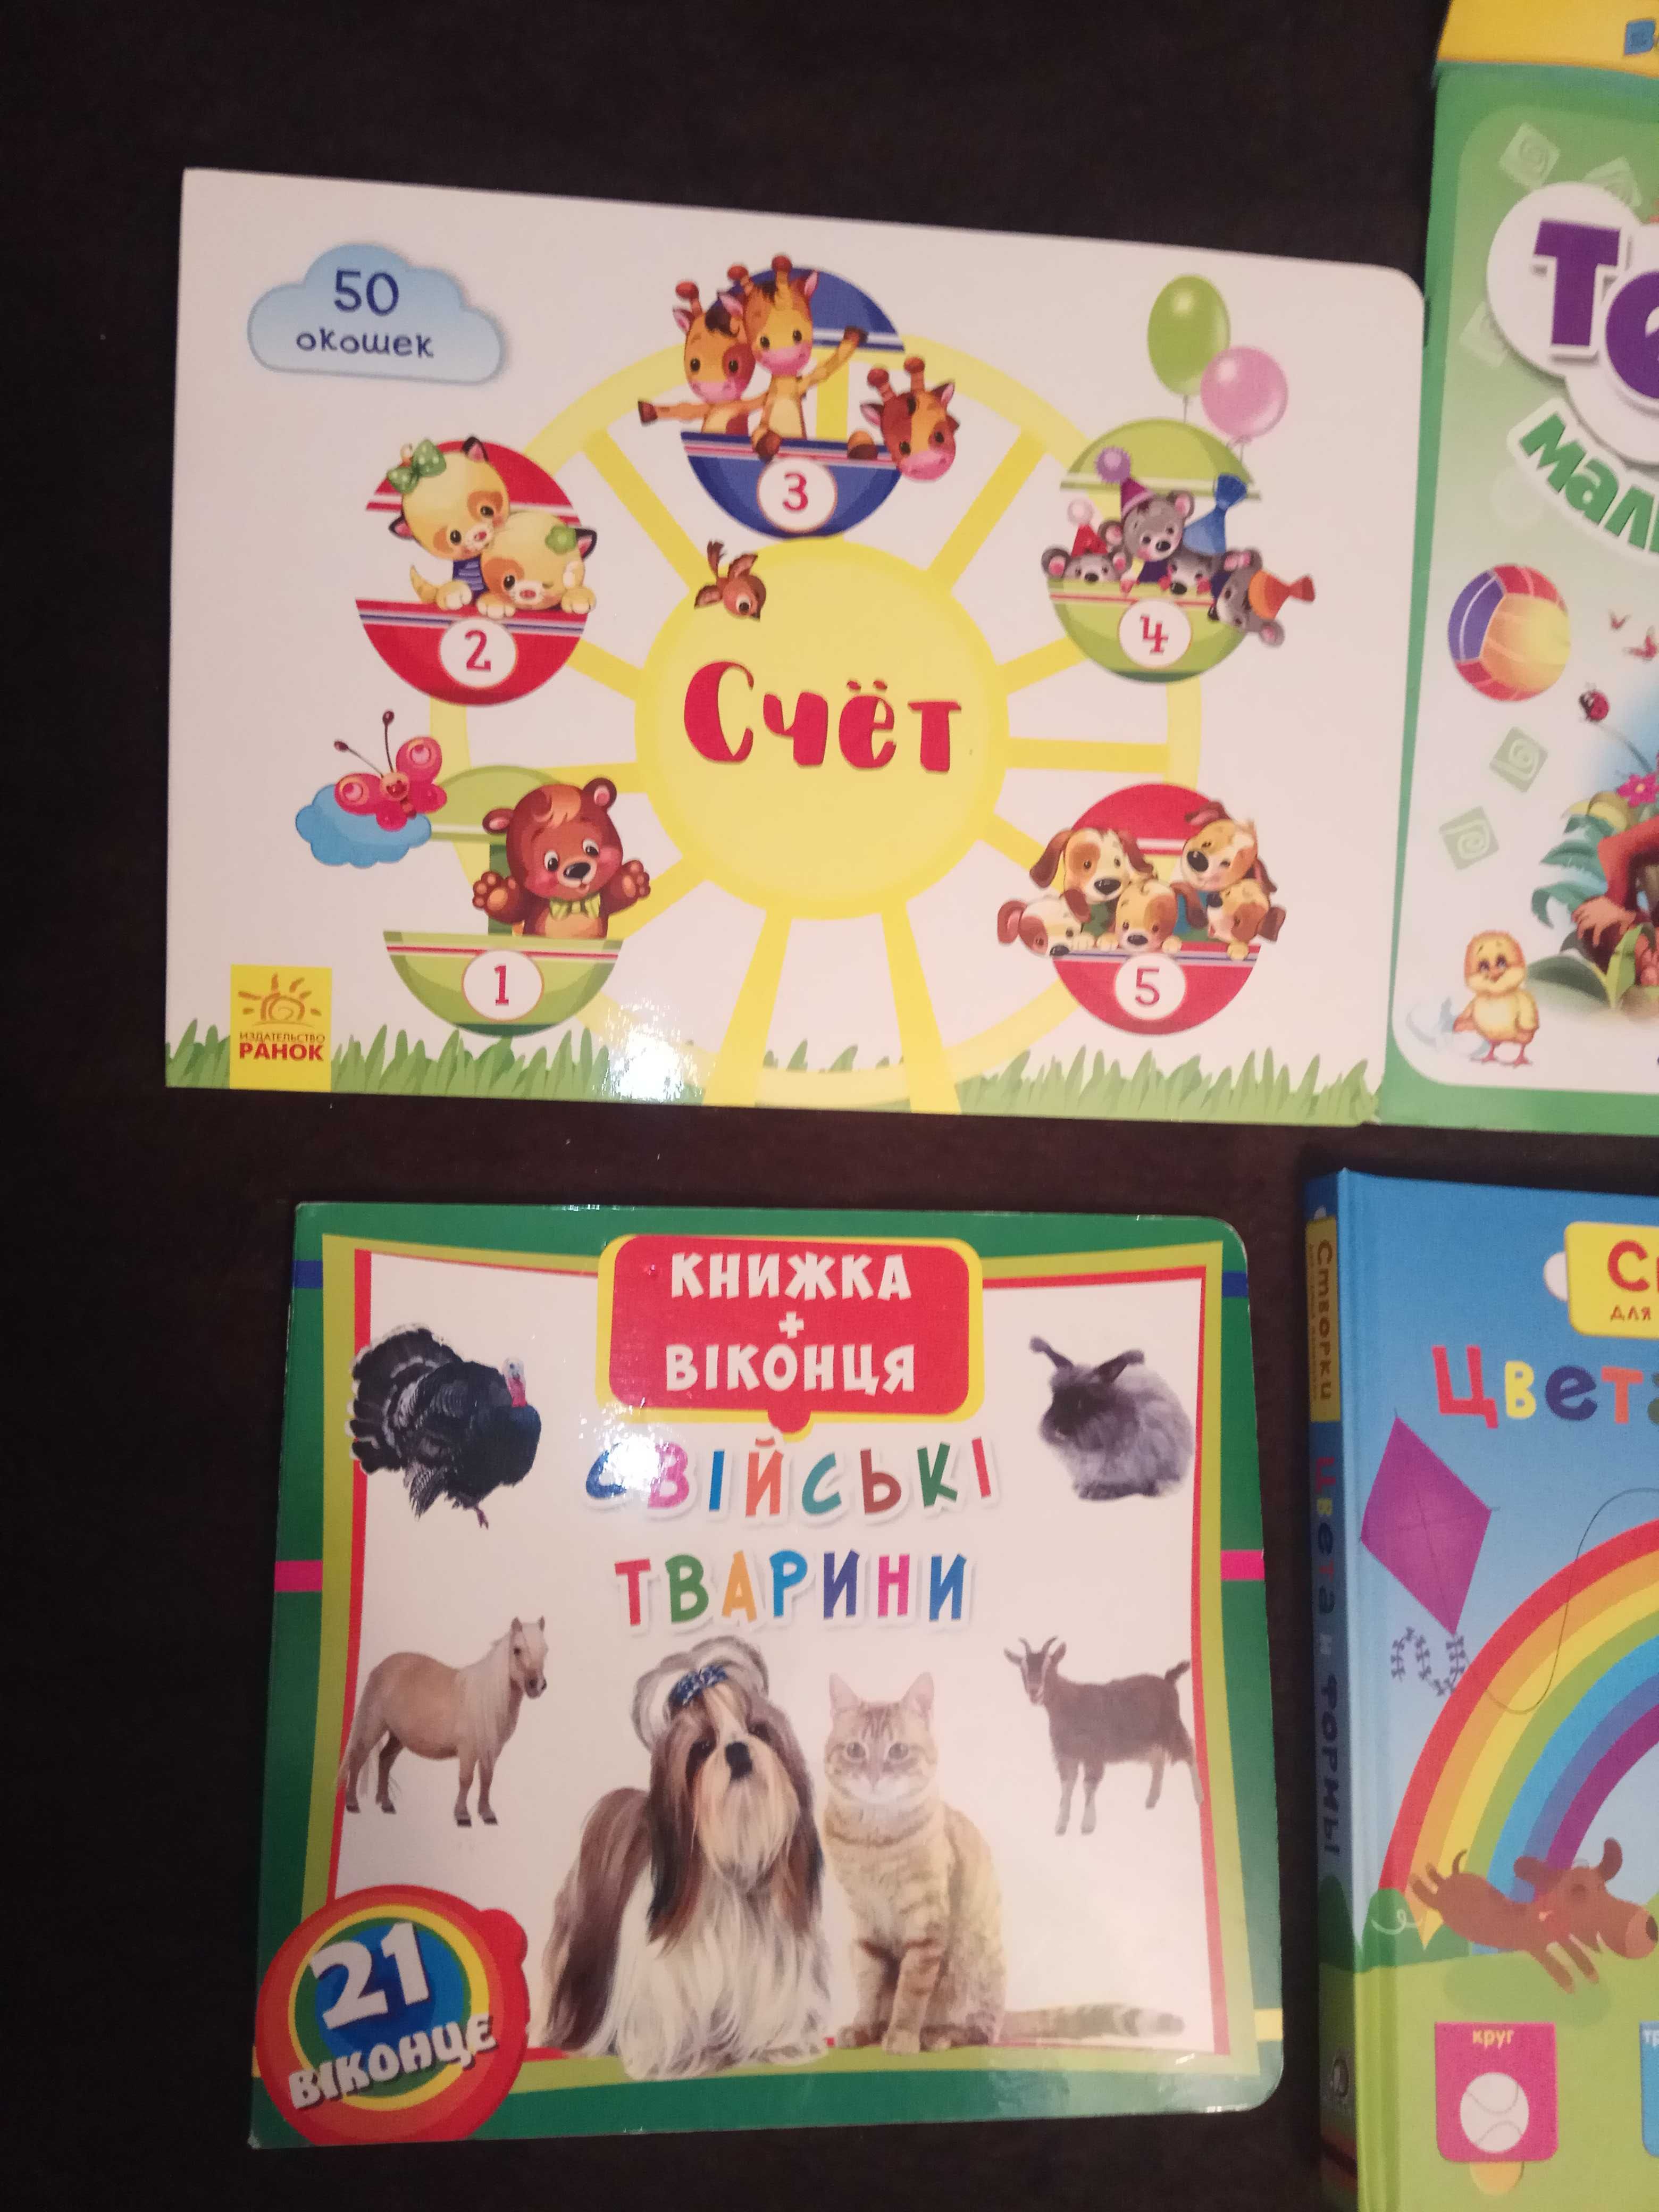 Книжки детские с окошками,  глазками Тесты для малышей